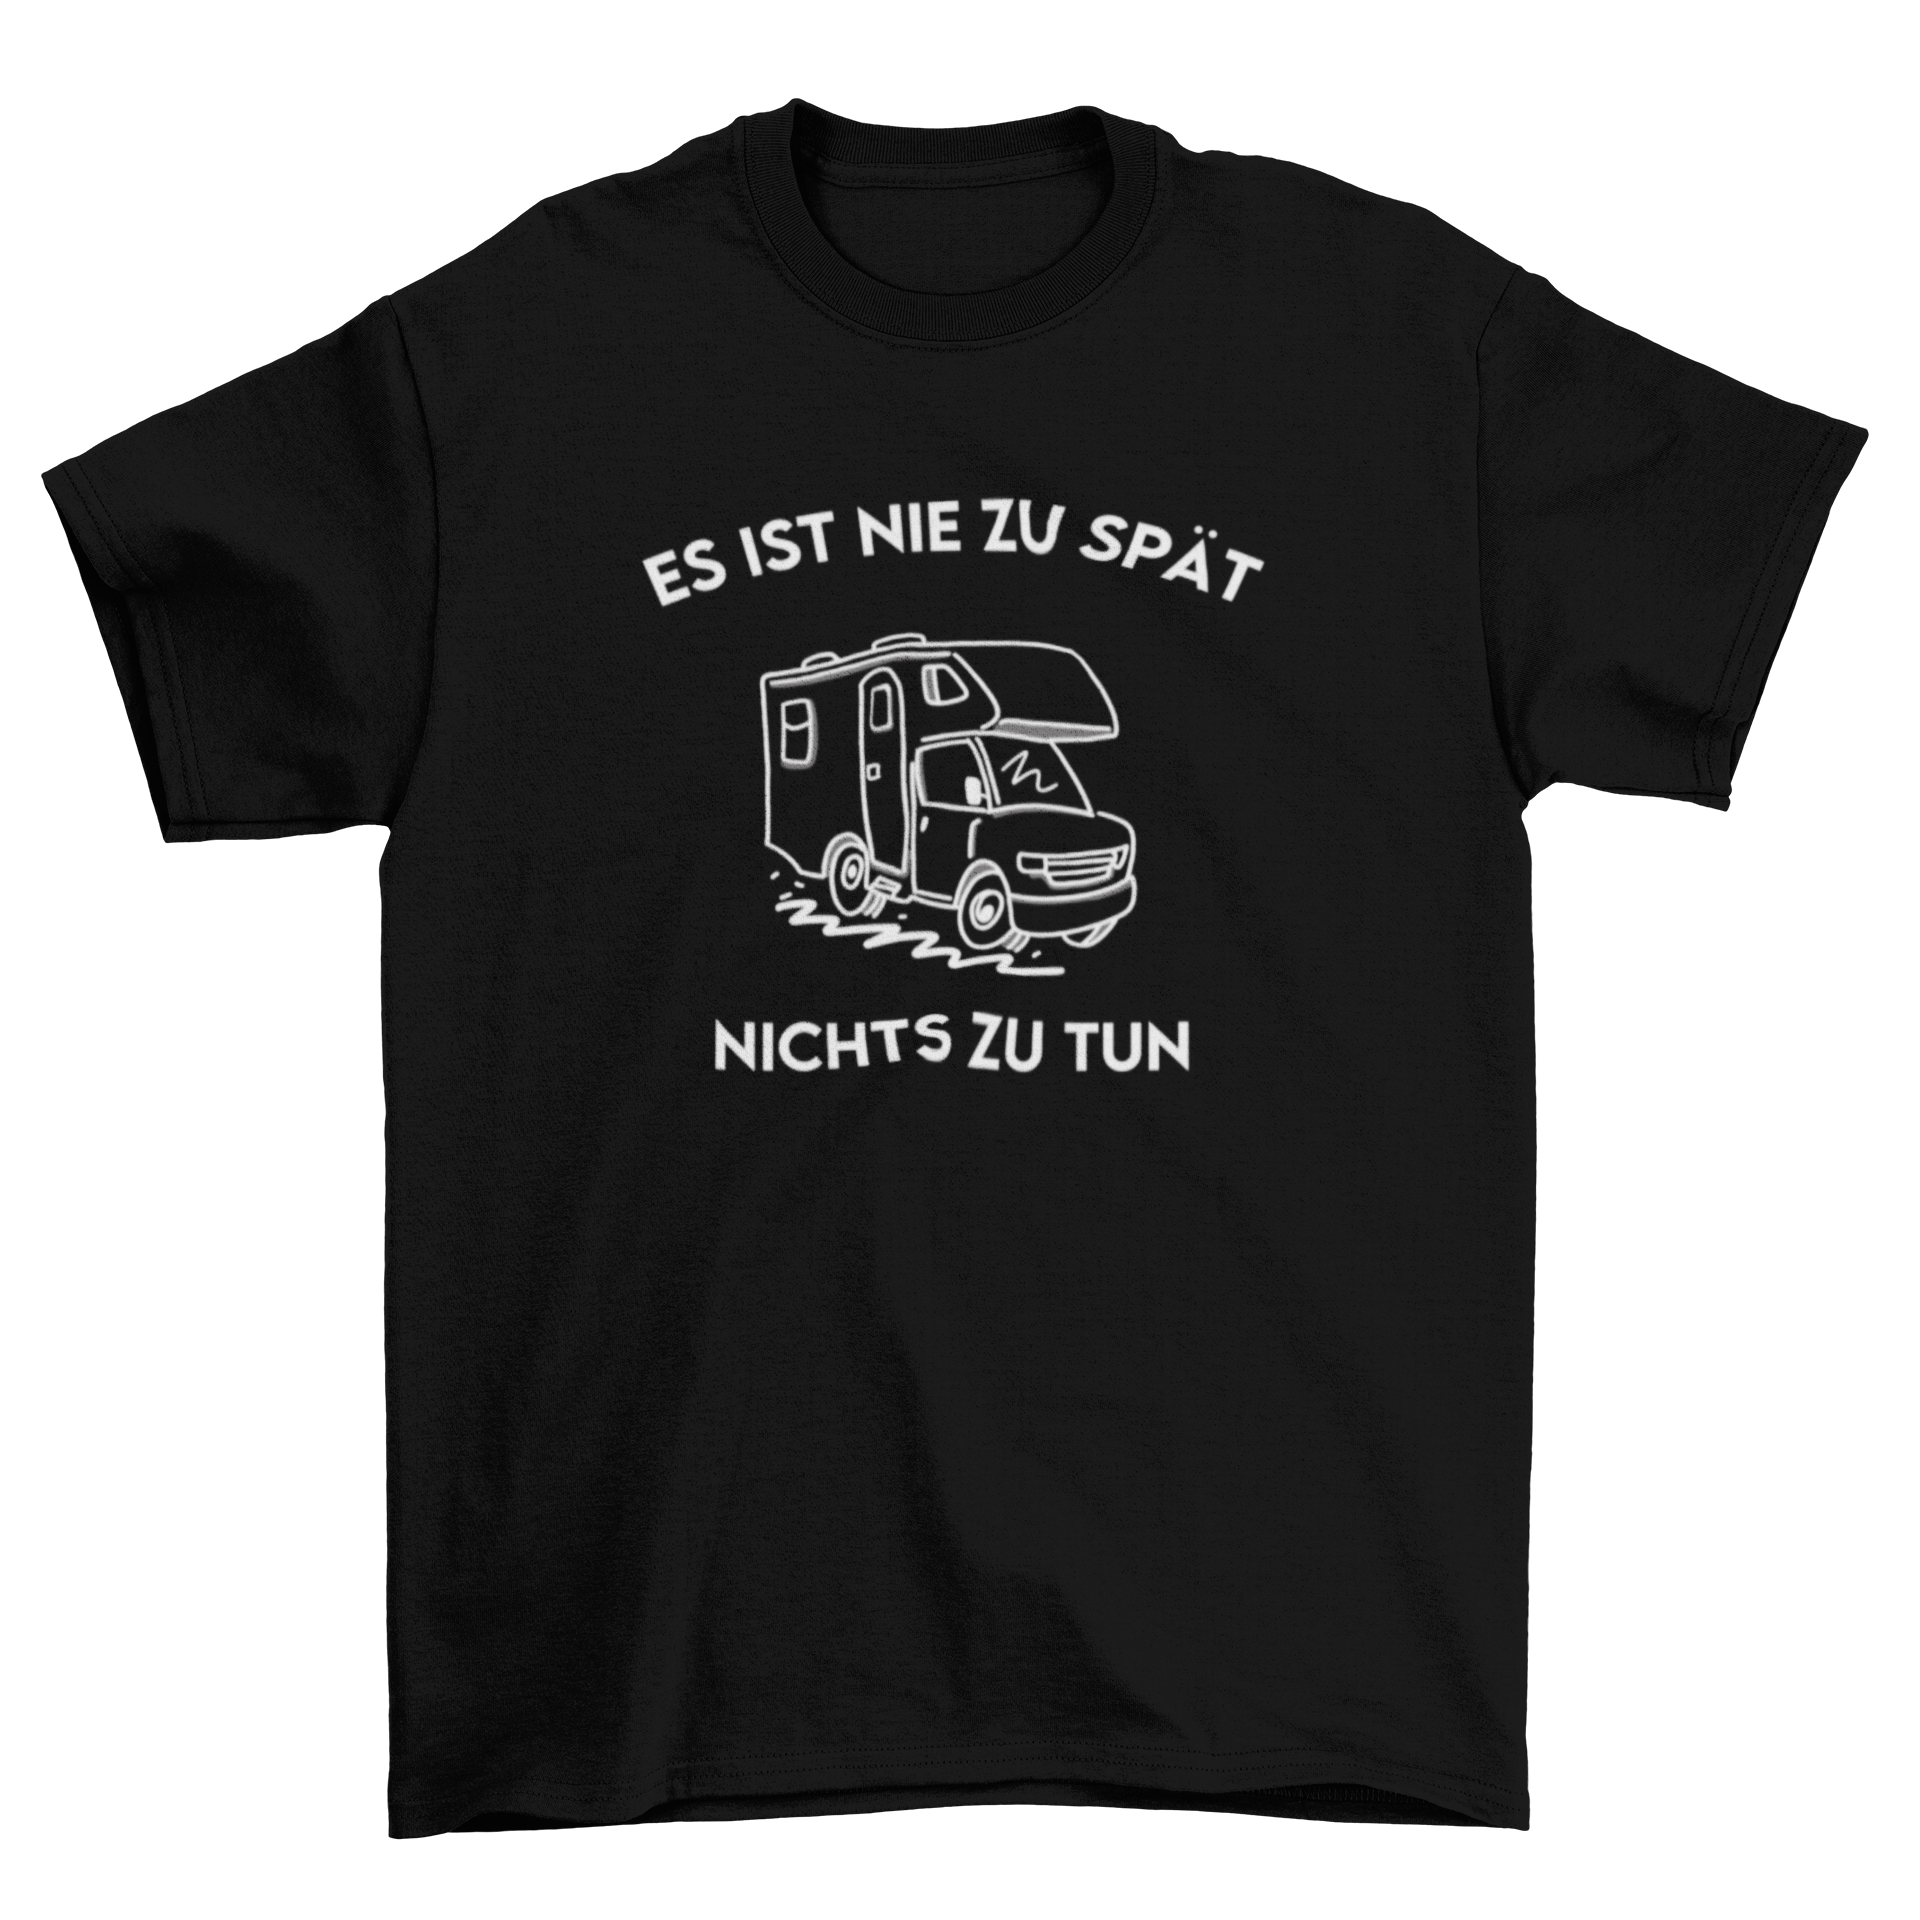 Es ist nie zu spät  - T-Shirt